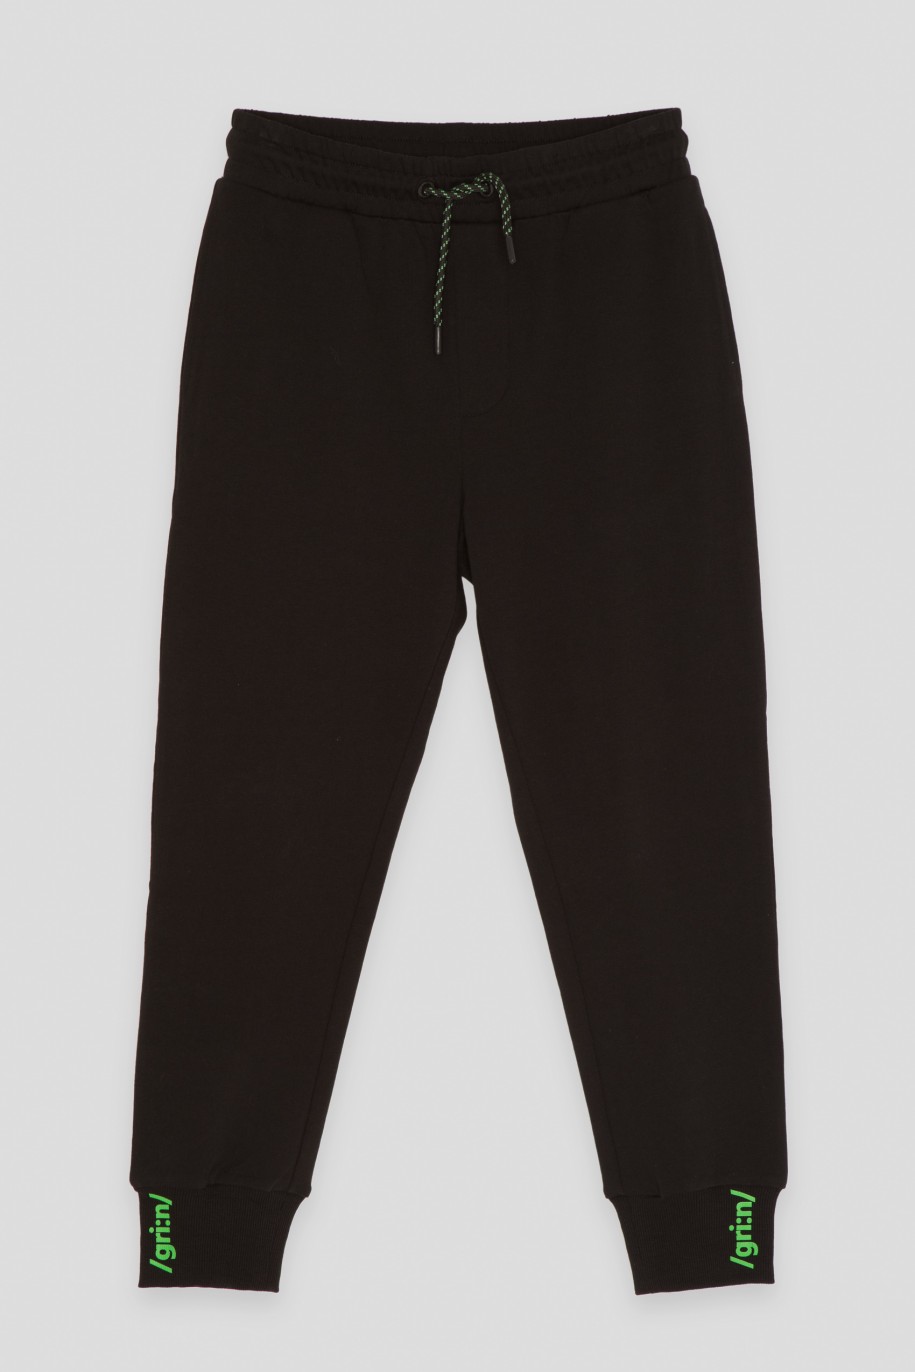 Czarne spodnie dresowe z minimalistycznym nadrukiem na ściągaczach - 45917